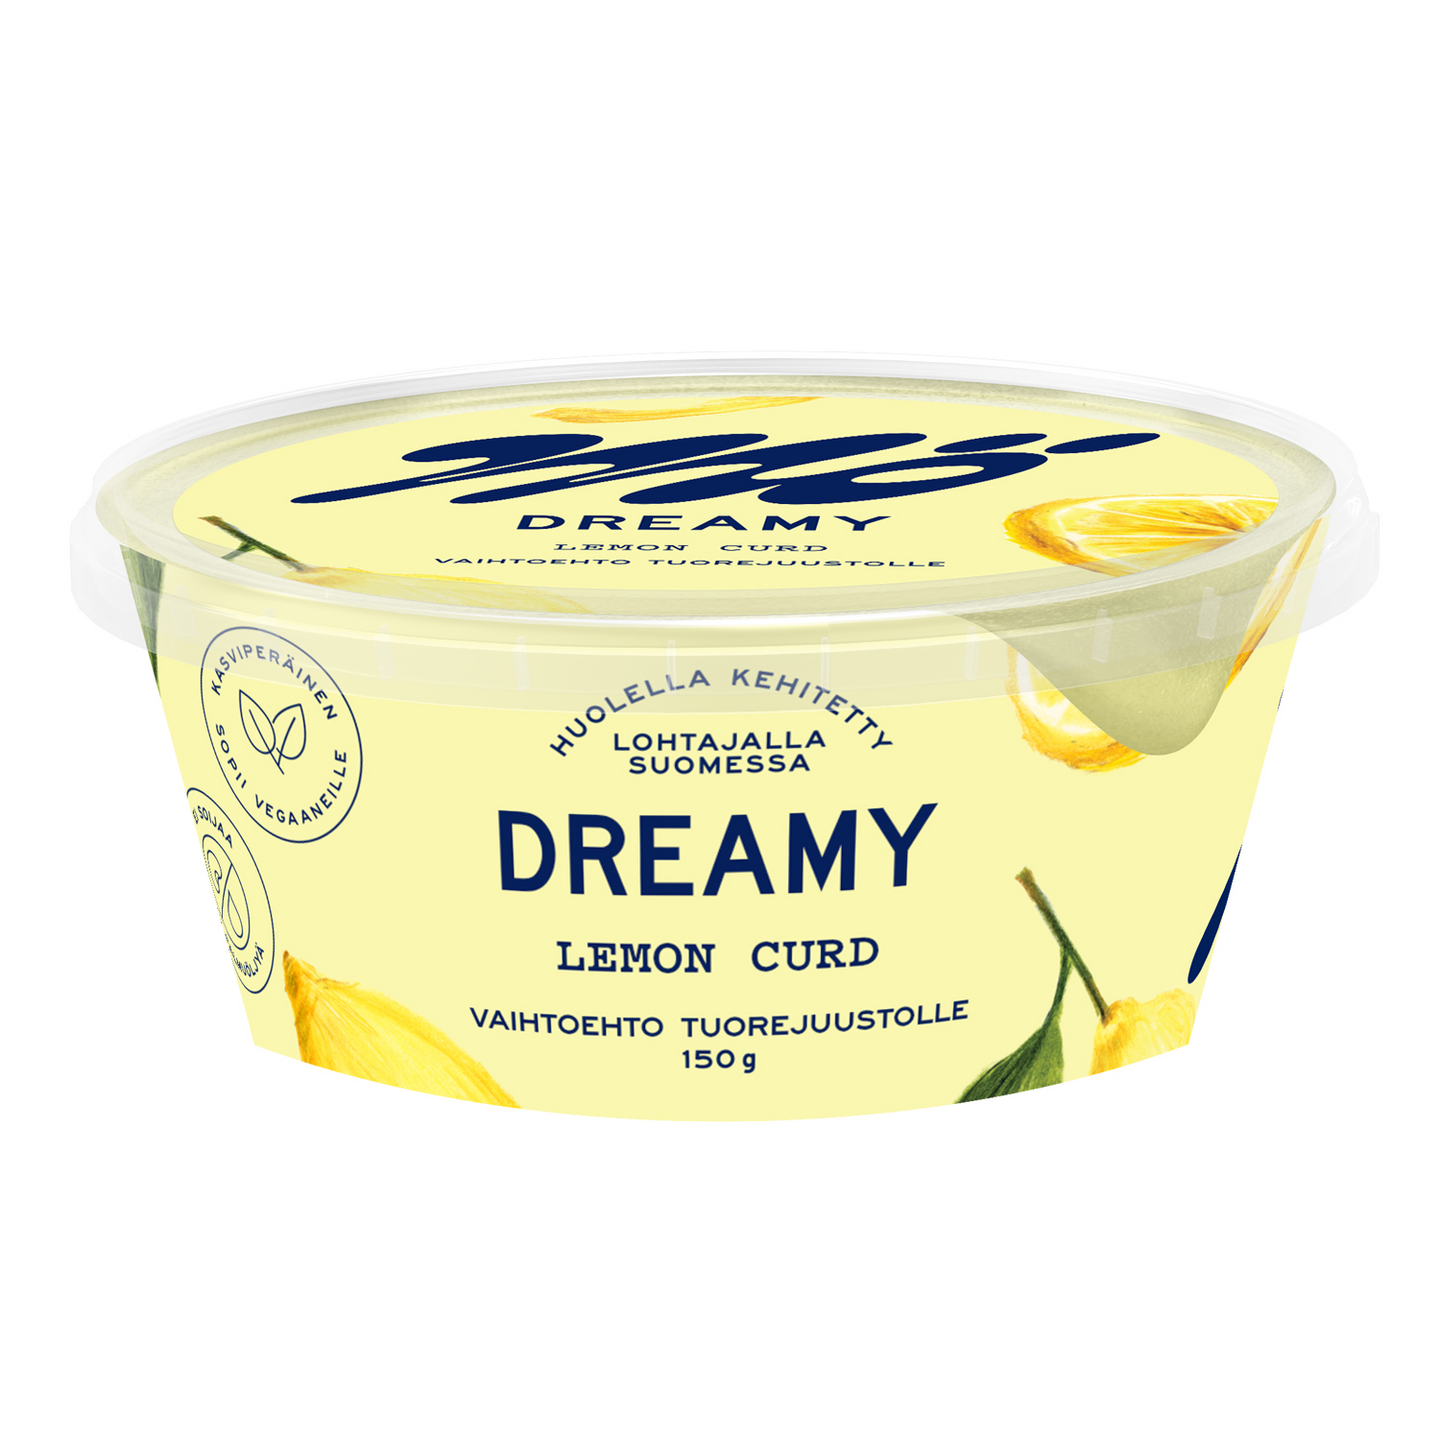 Mö Dreamy lemon curd vaihtoehto tuorejuustolle 150 g